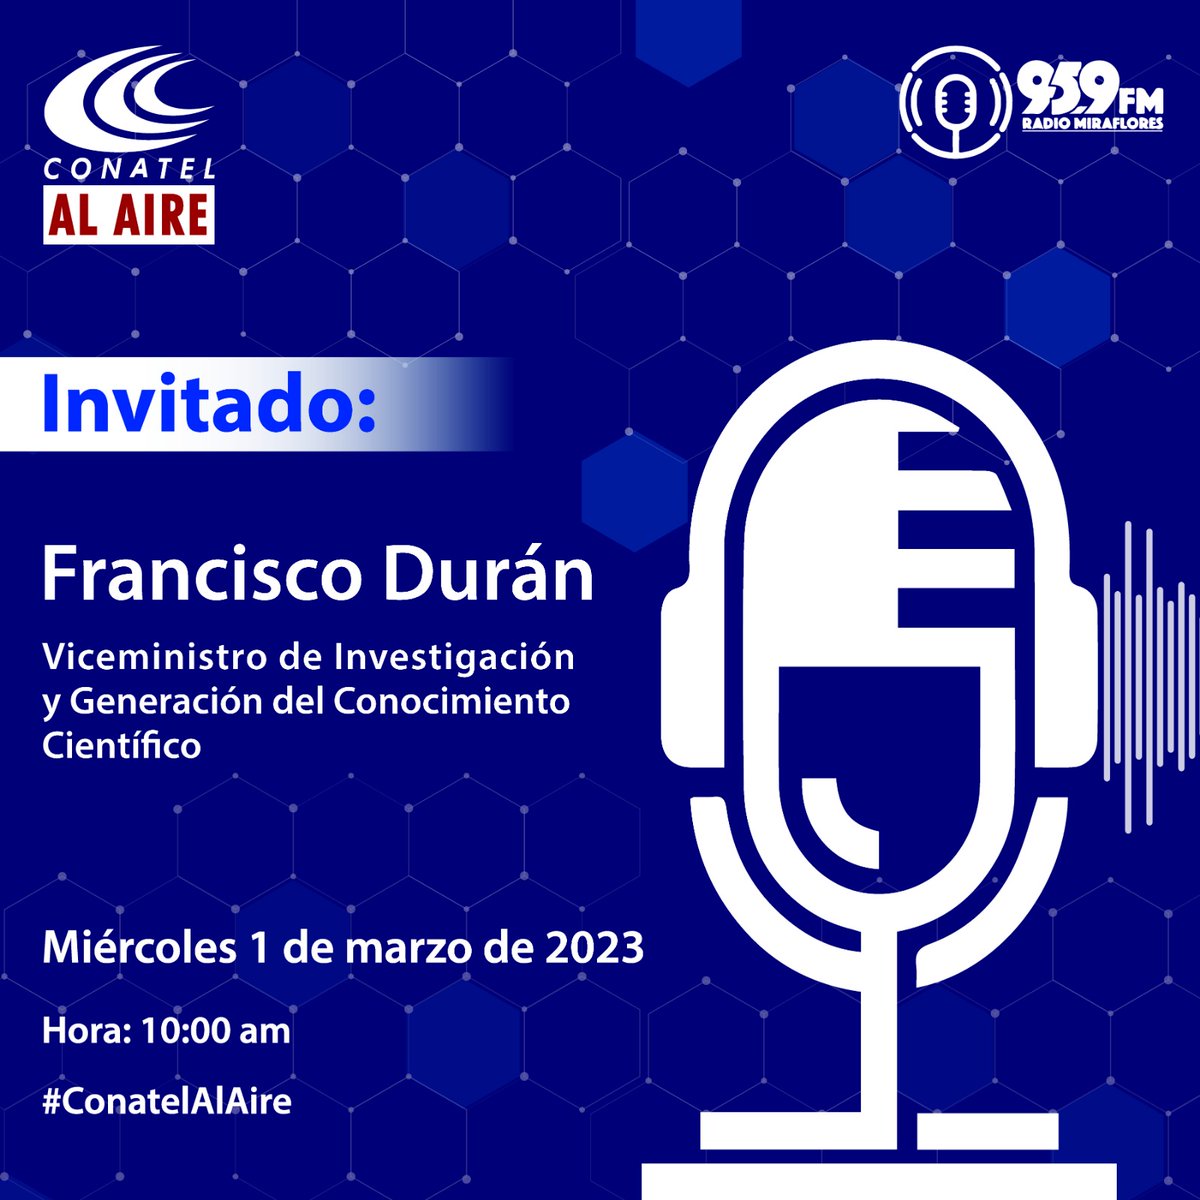 Mañana no te pierdas al Viceministro Francisco Durán @fduran_ve por Radio Miraflores.

Hora: 10:00am 
#conatelalaire

#Ciencia #Conocimiento 
@Mincyt_VE